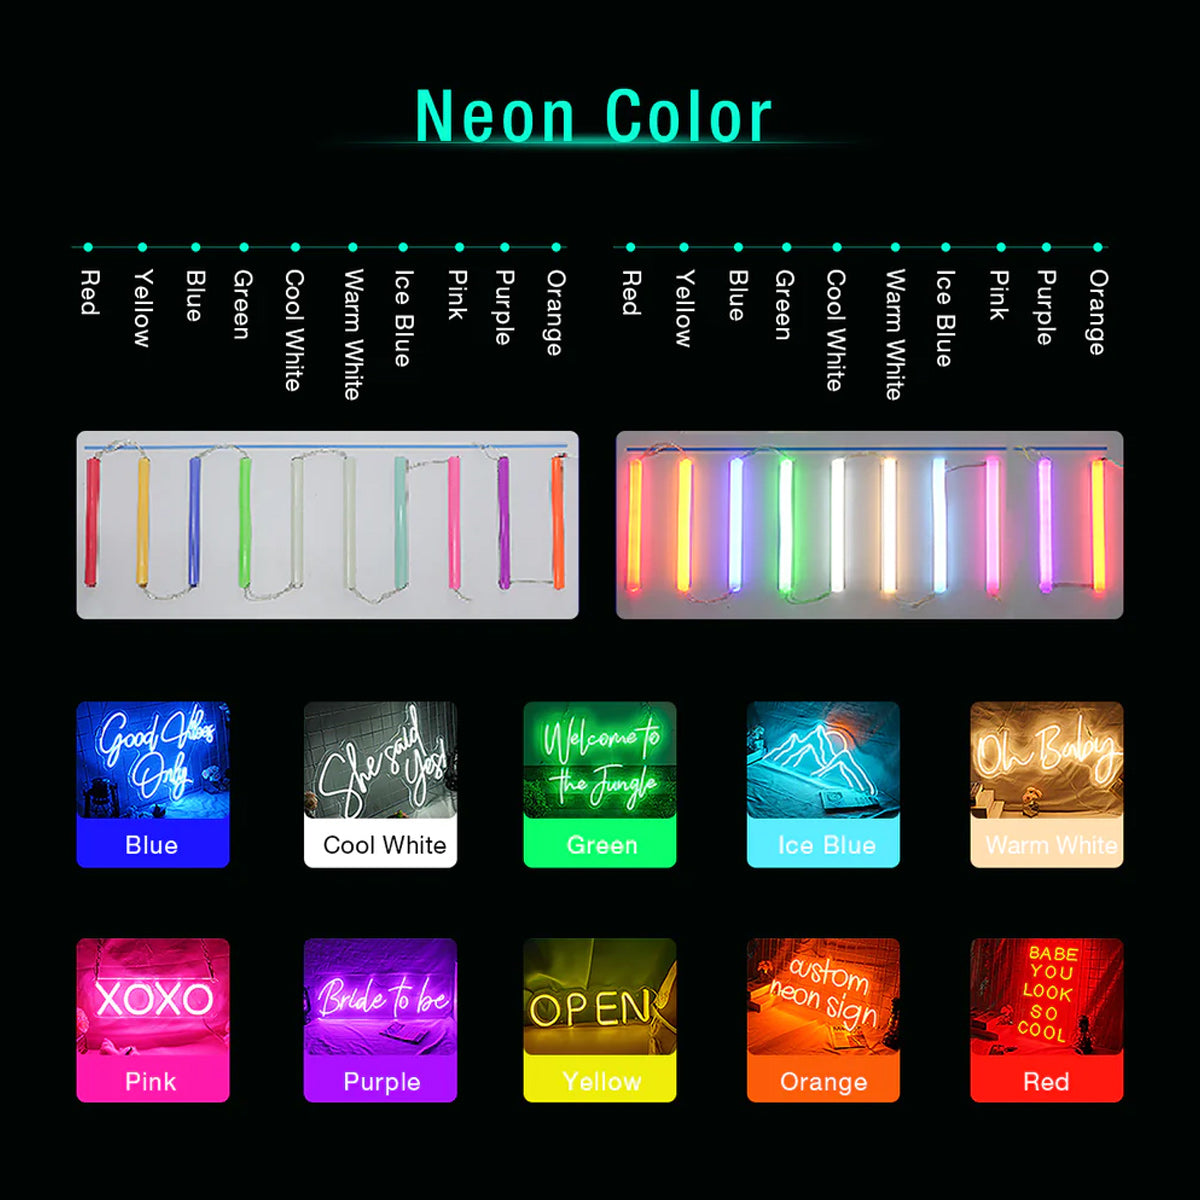 NEONIP-100% Handmade Love Yourself Mirror Neon Light for Bedroom